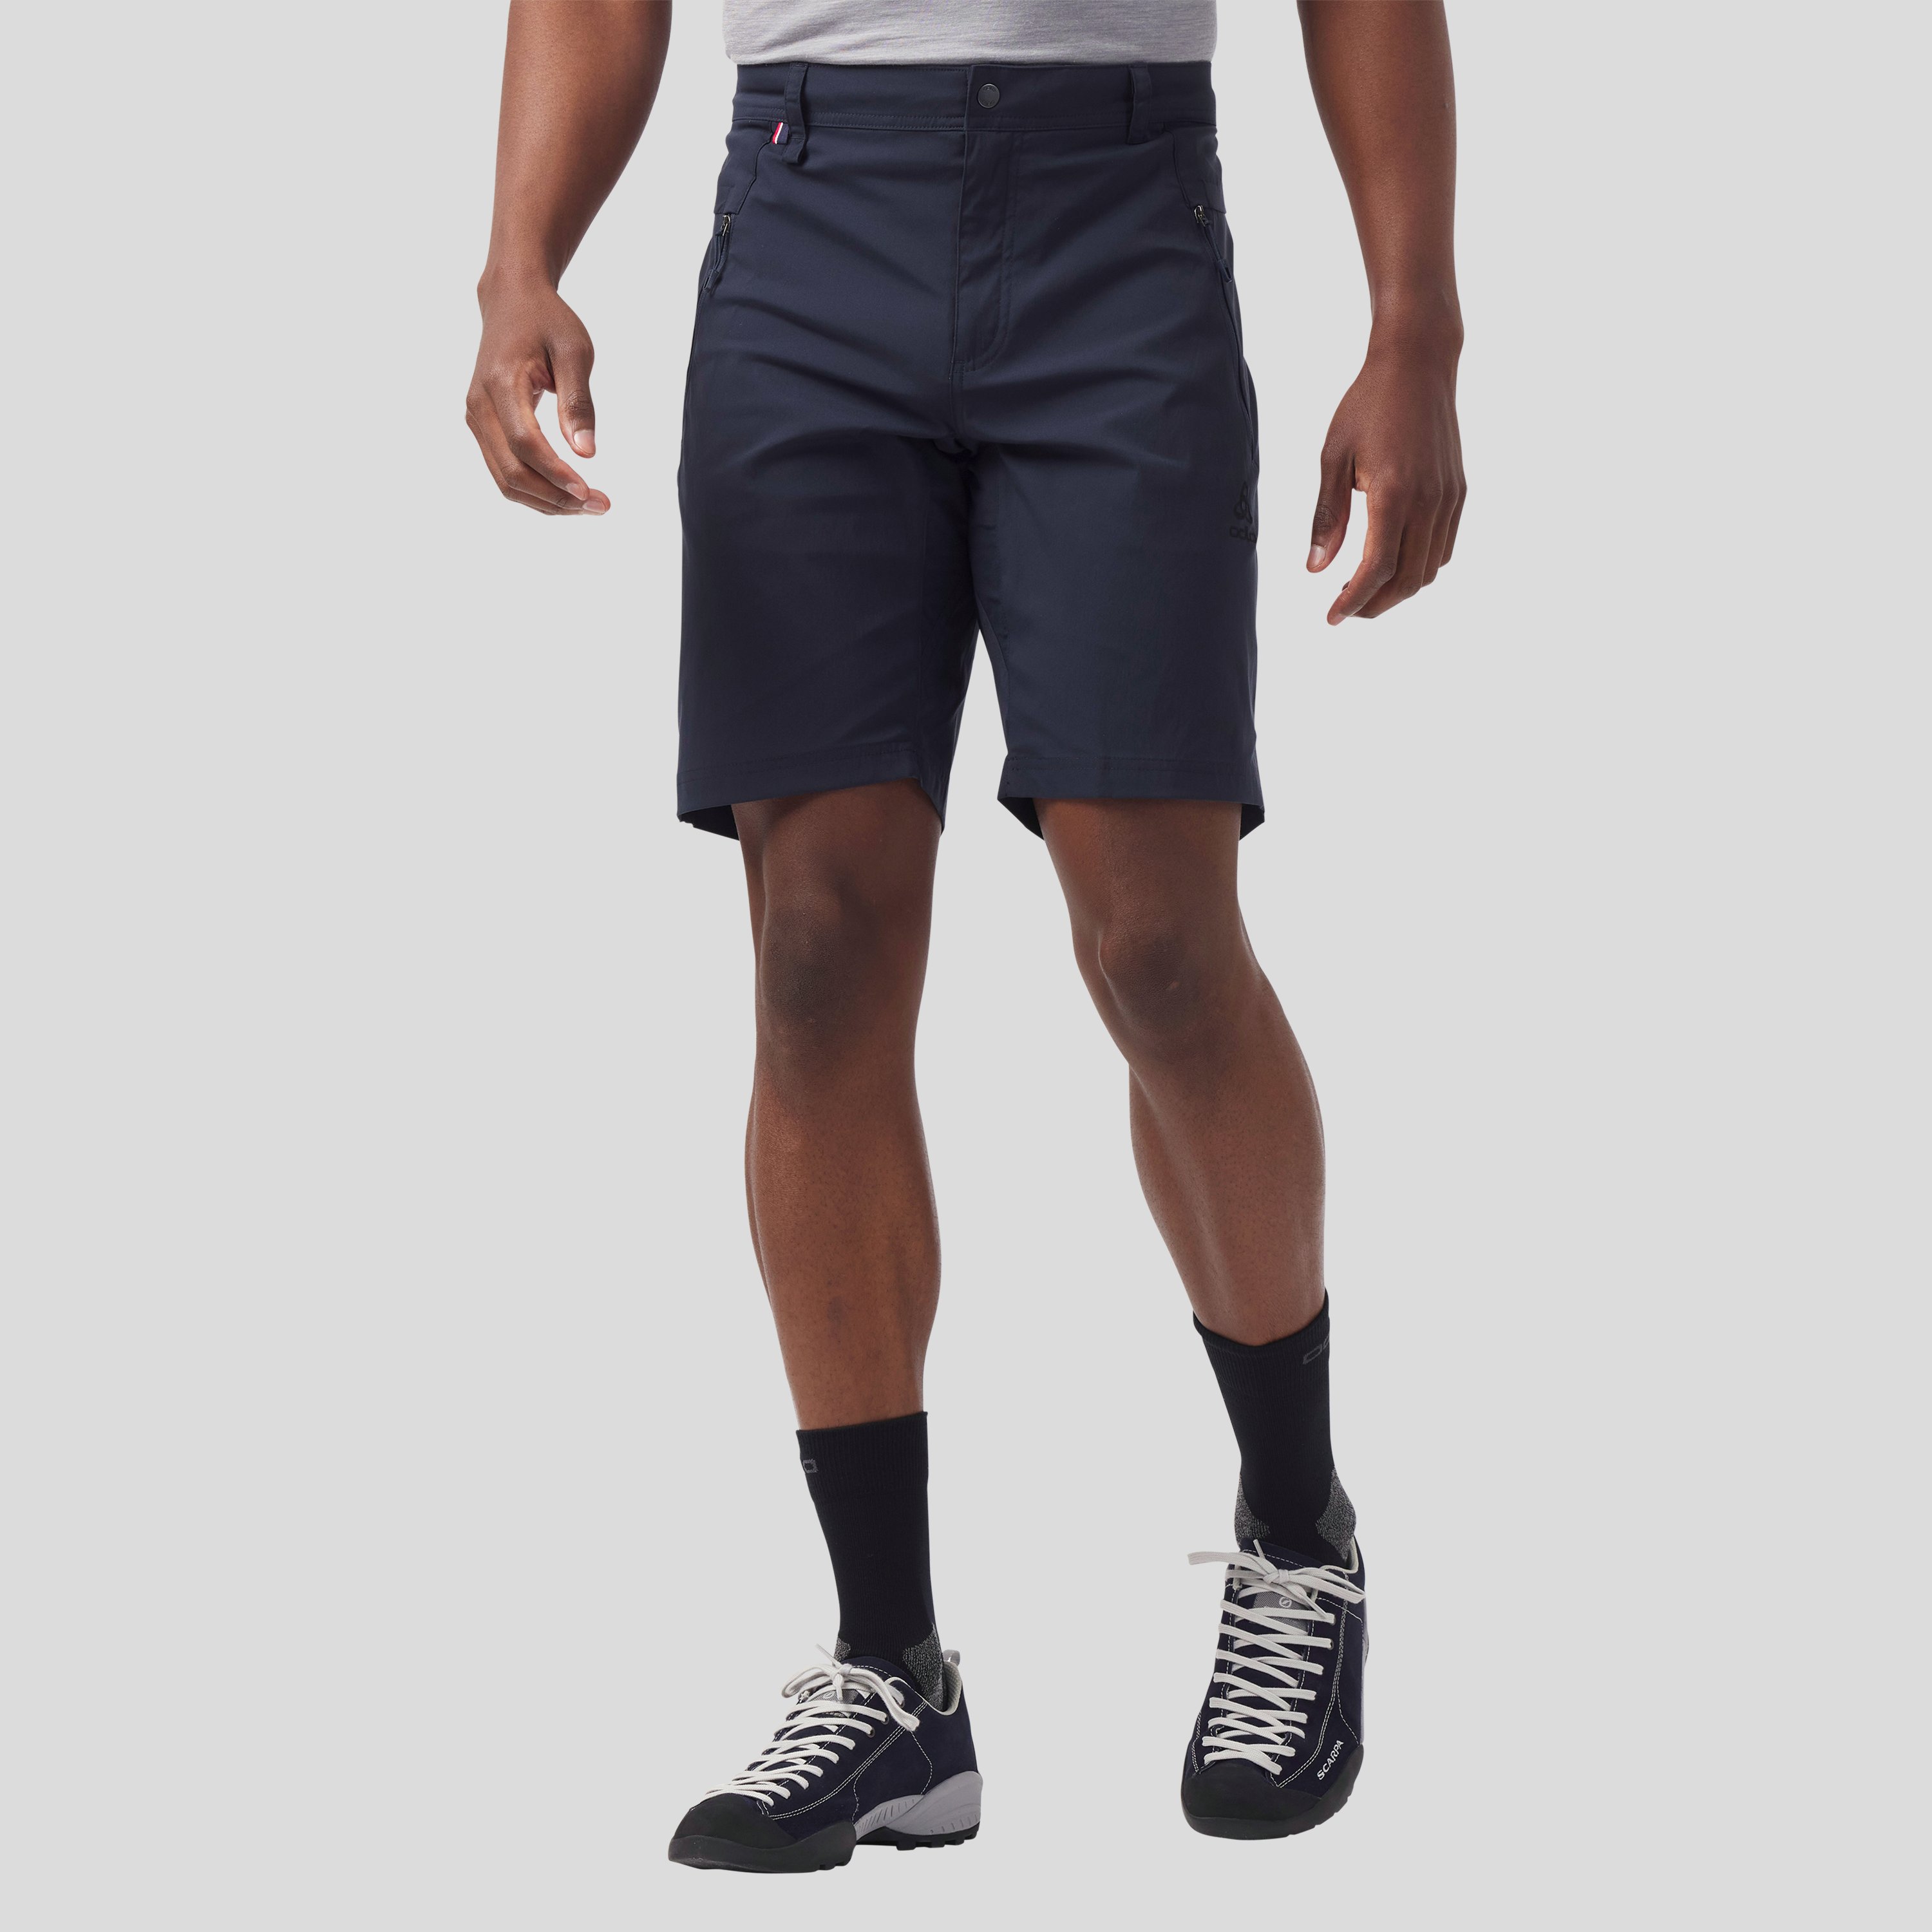 ODLO Wedgemount Shorts für Herren, 50, marineblau